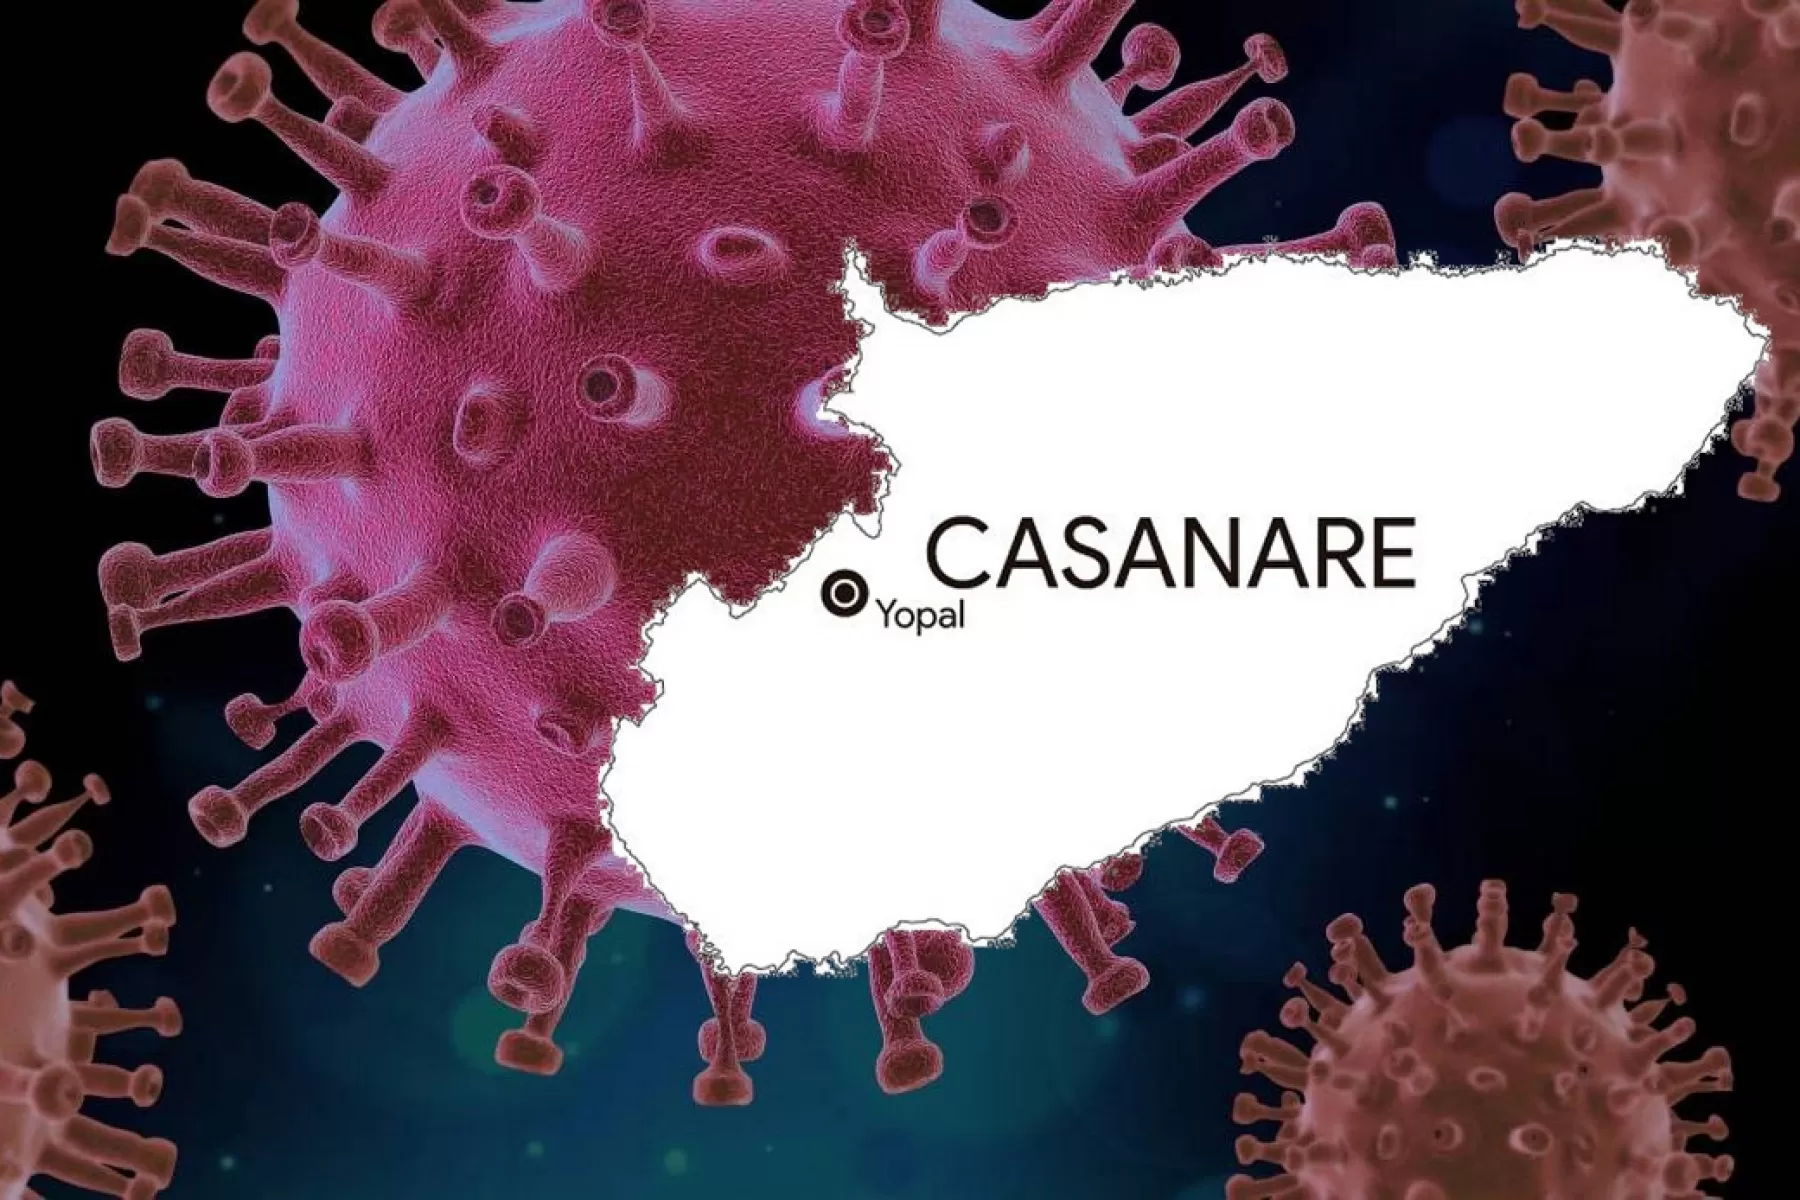 Autoridades de Casanare reportaron segundo caso de coronavirus Covid-19 en el departamento.